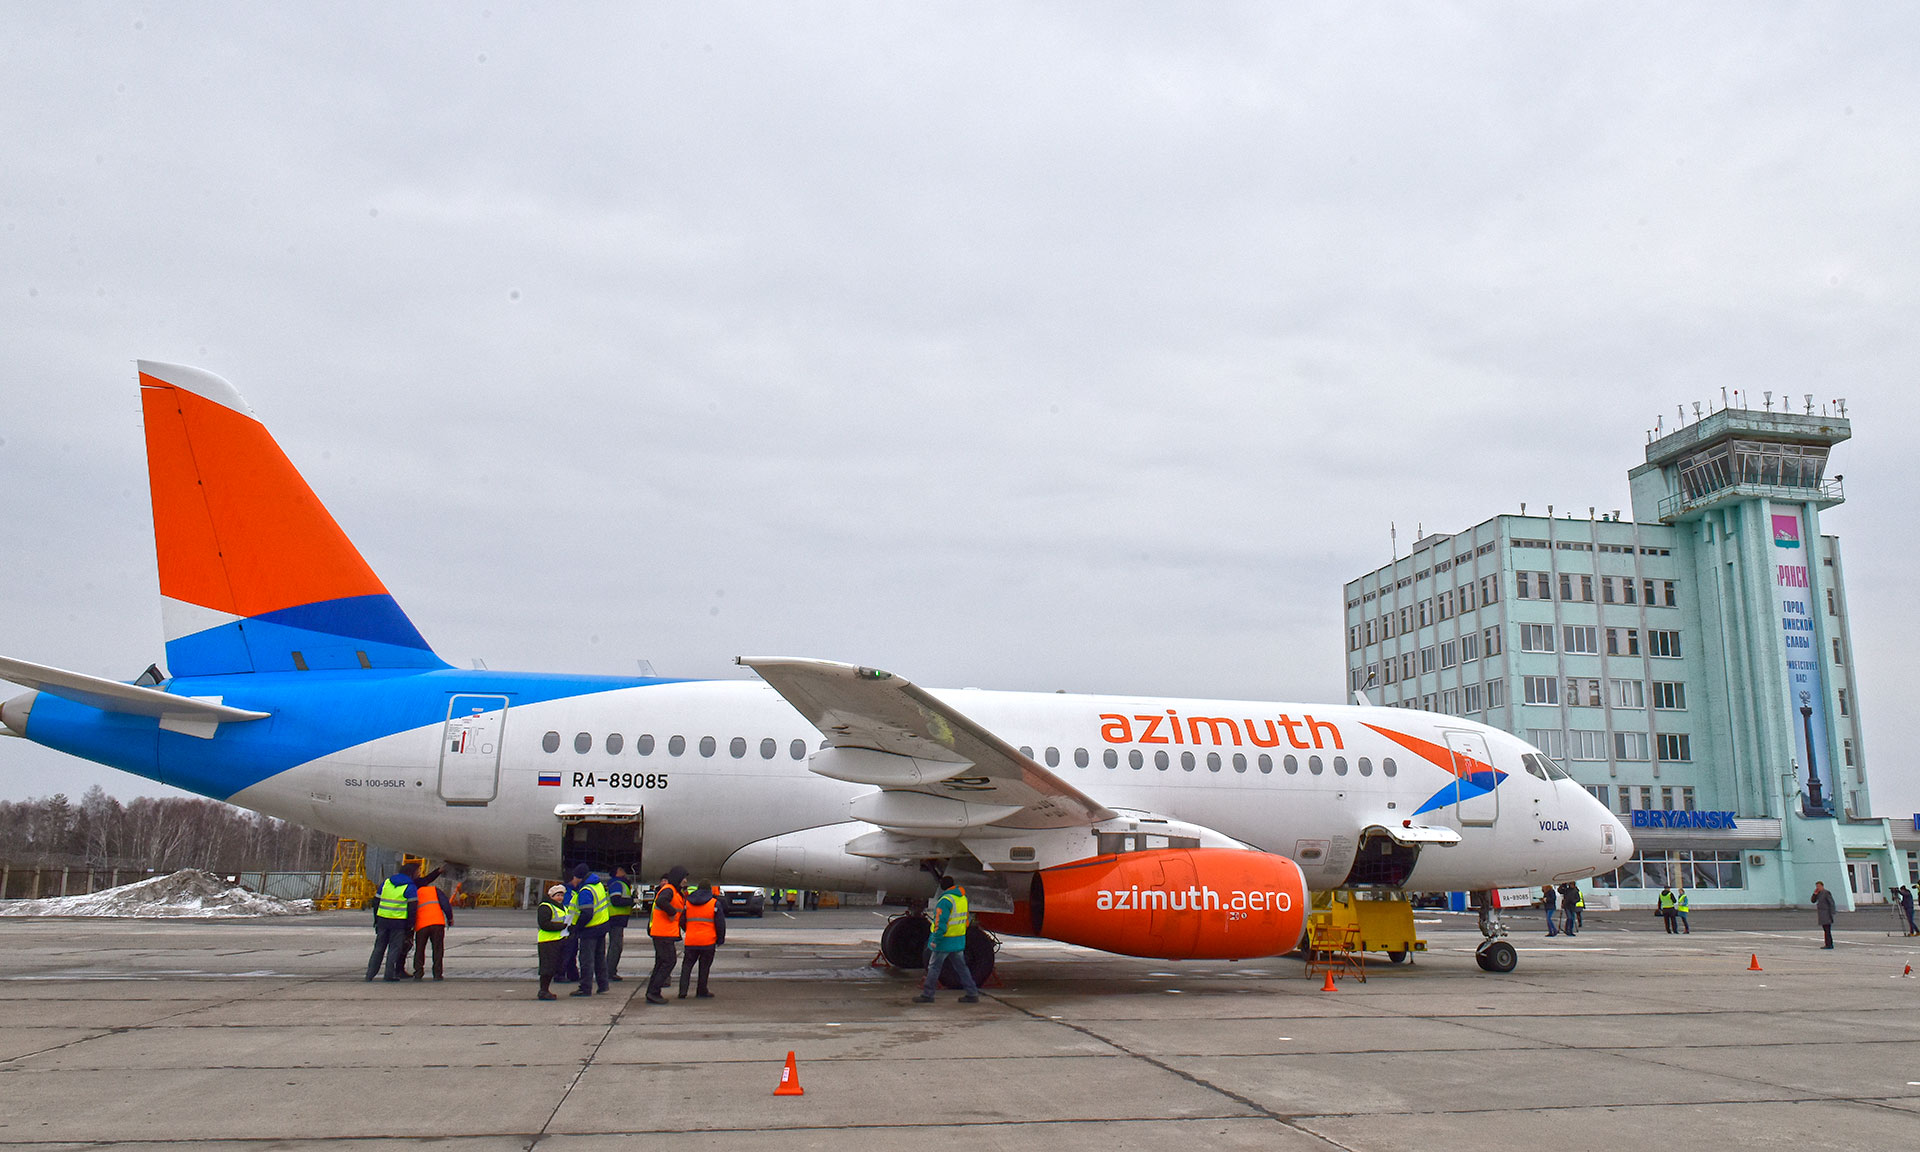 Открыты авиарейсы между Брянском и Санкт-Петербургом на зимний сезон